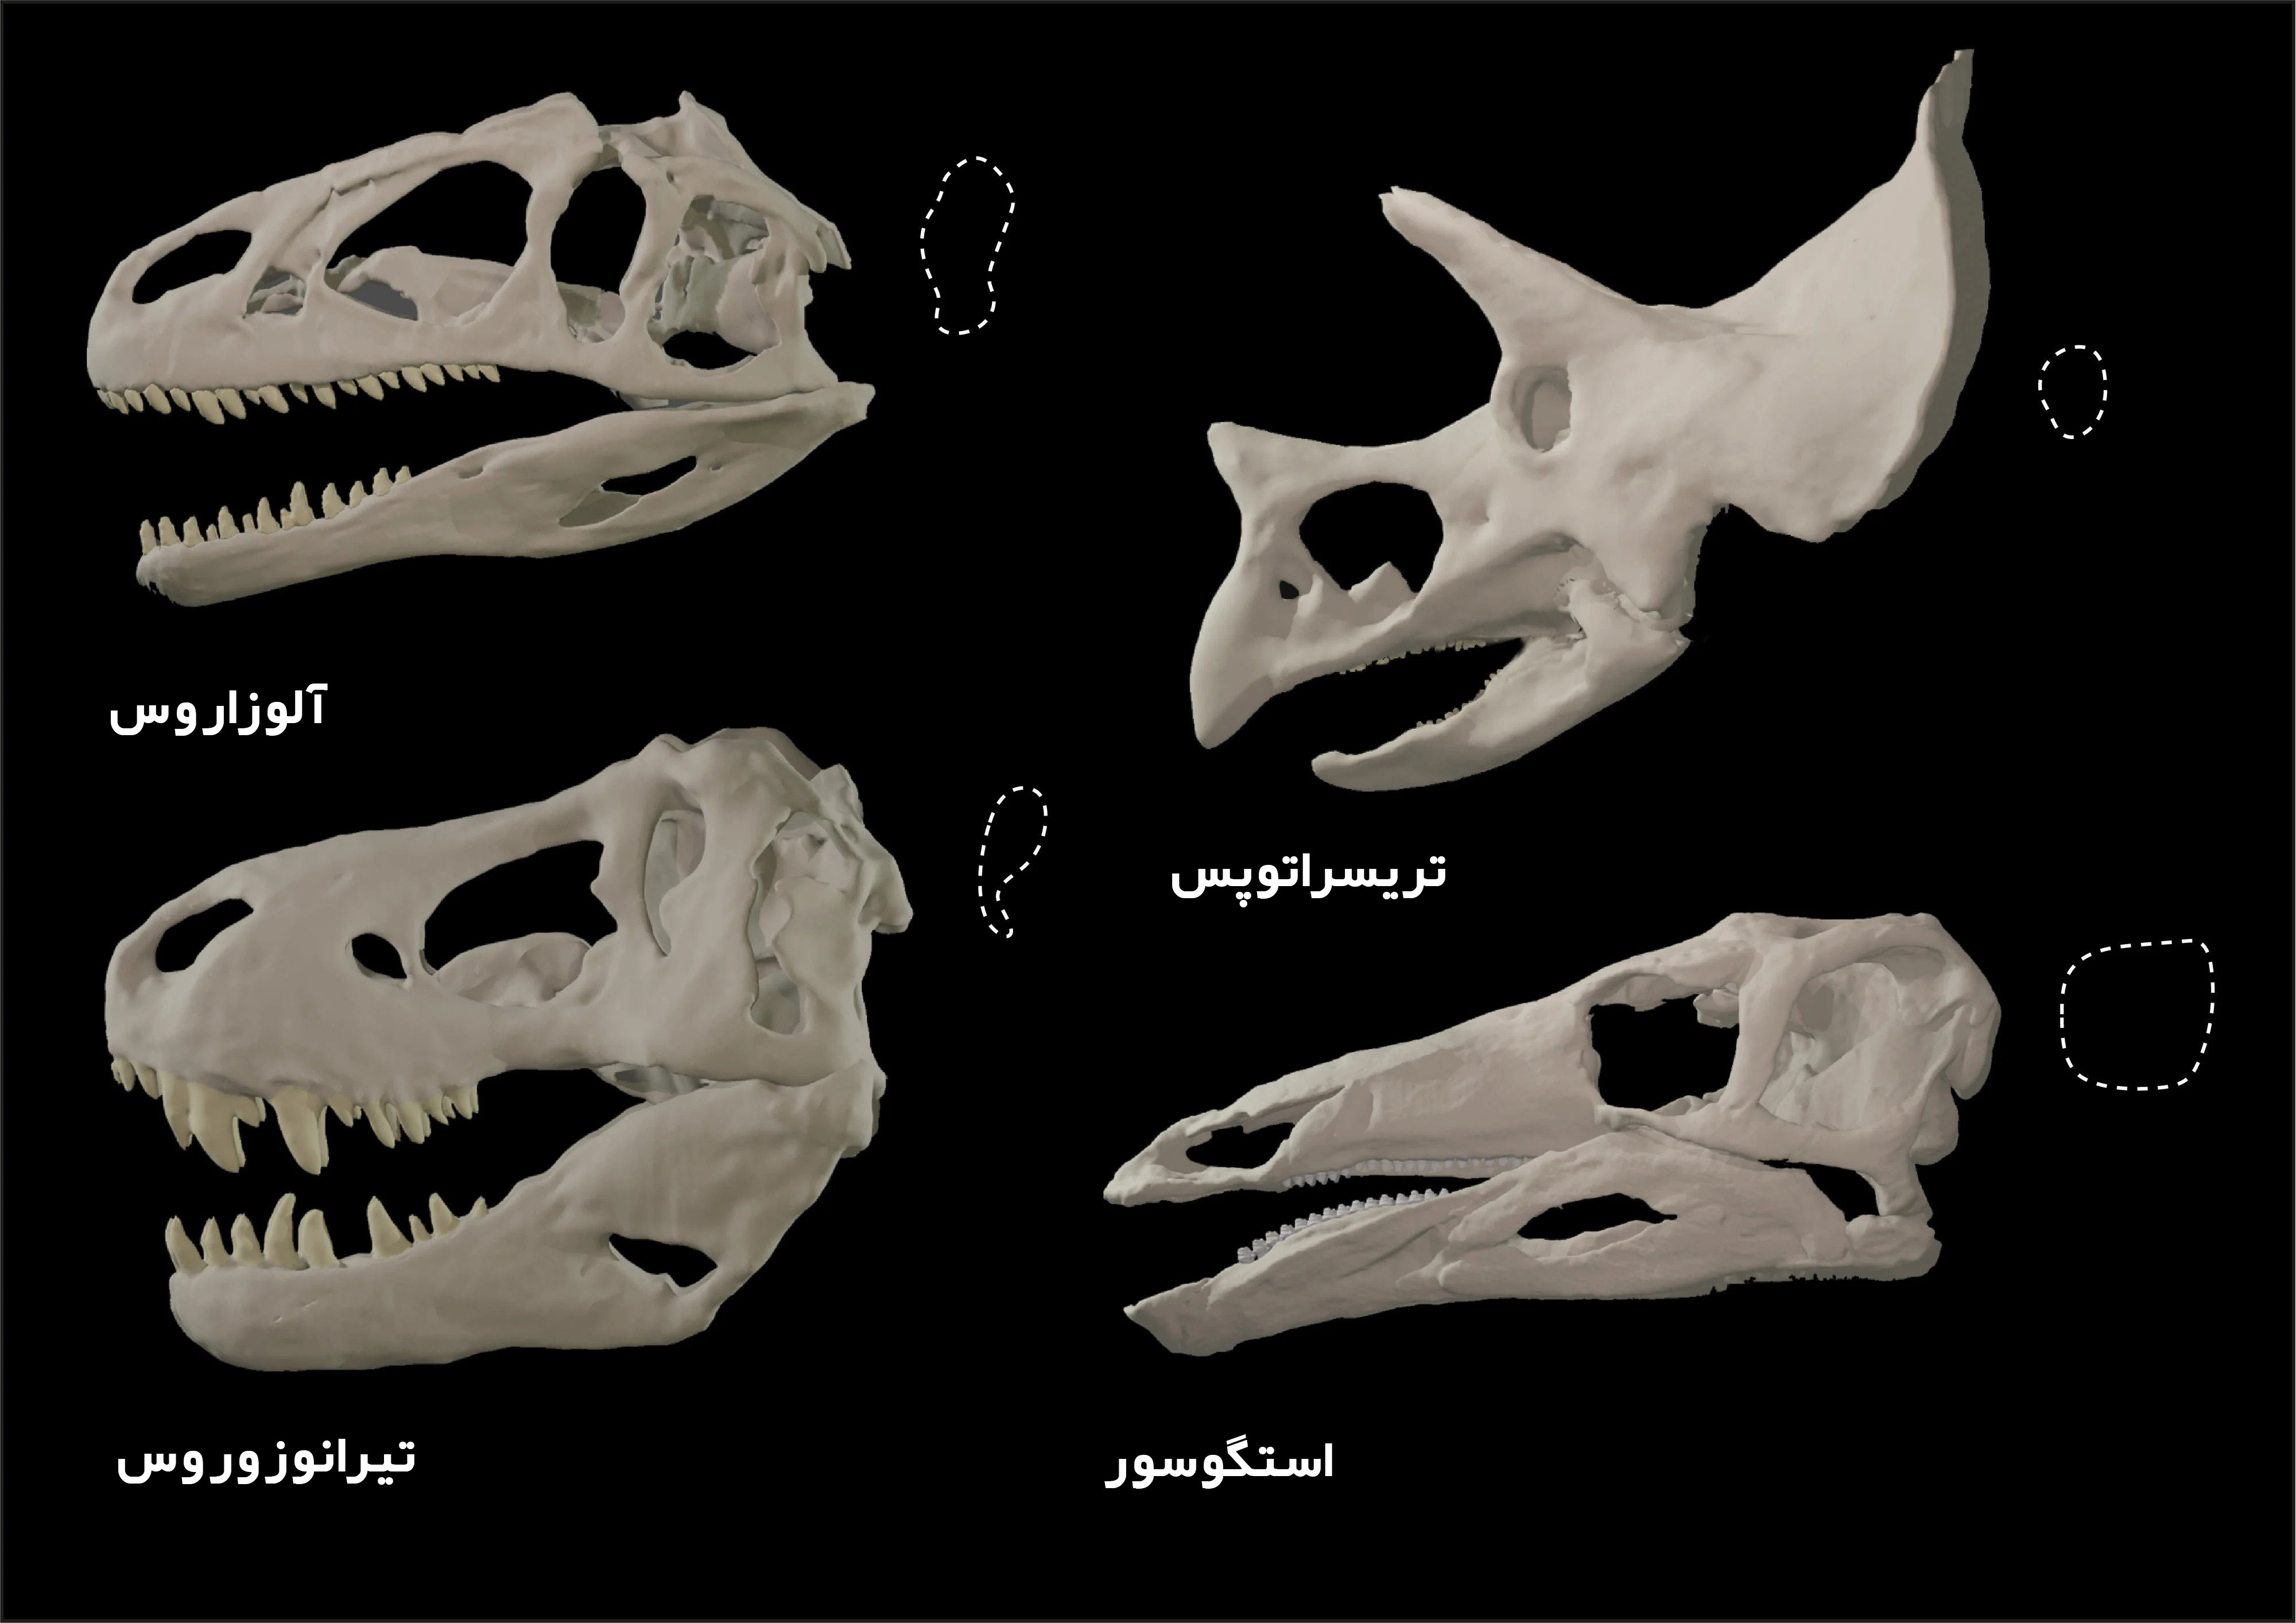 공룡 두개골의 변형